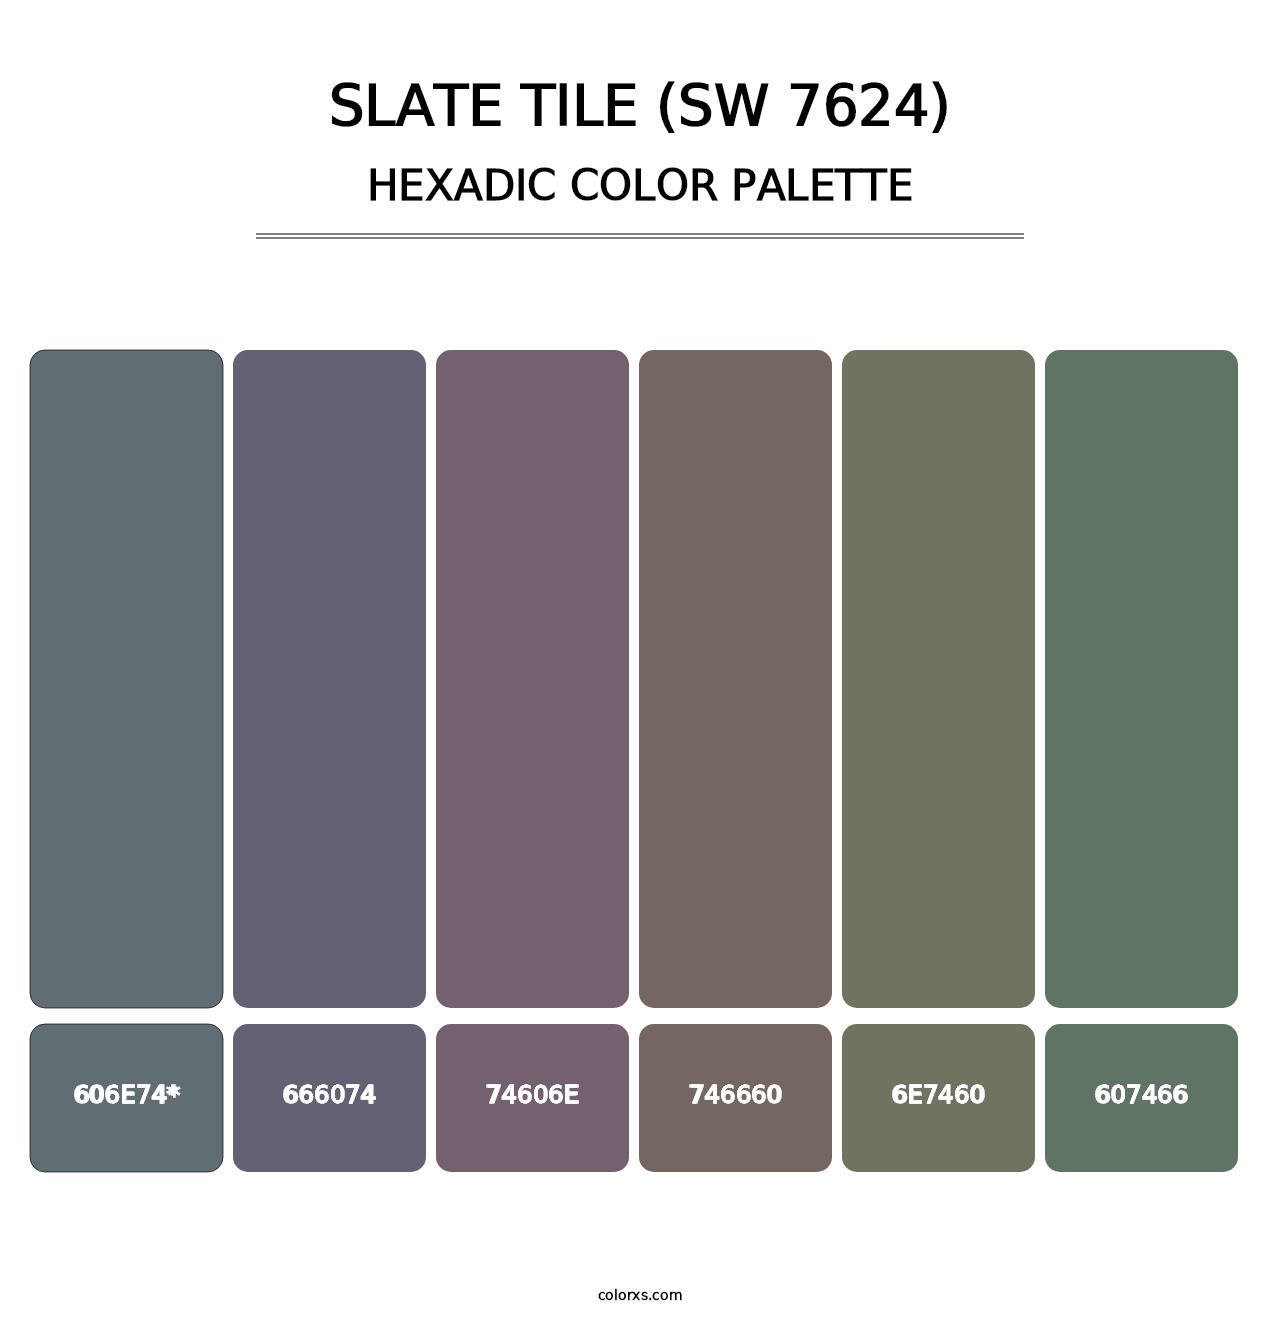 Slate Tile (SW 7624) - Hexadic Color Palette